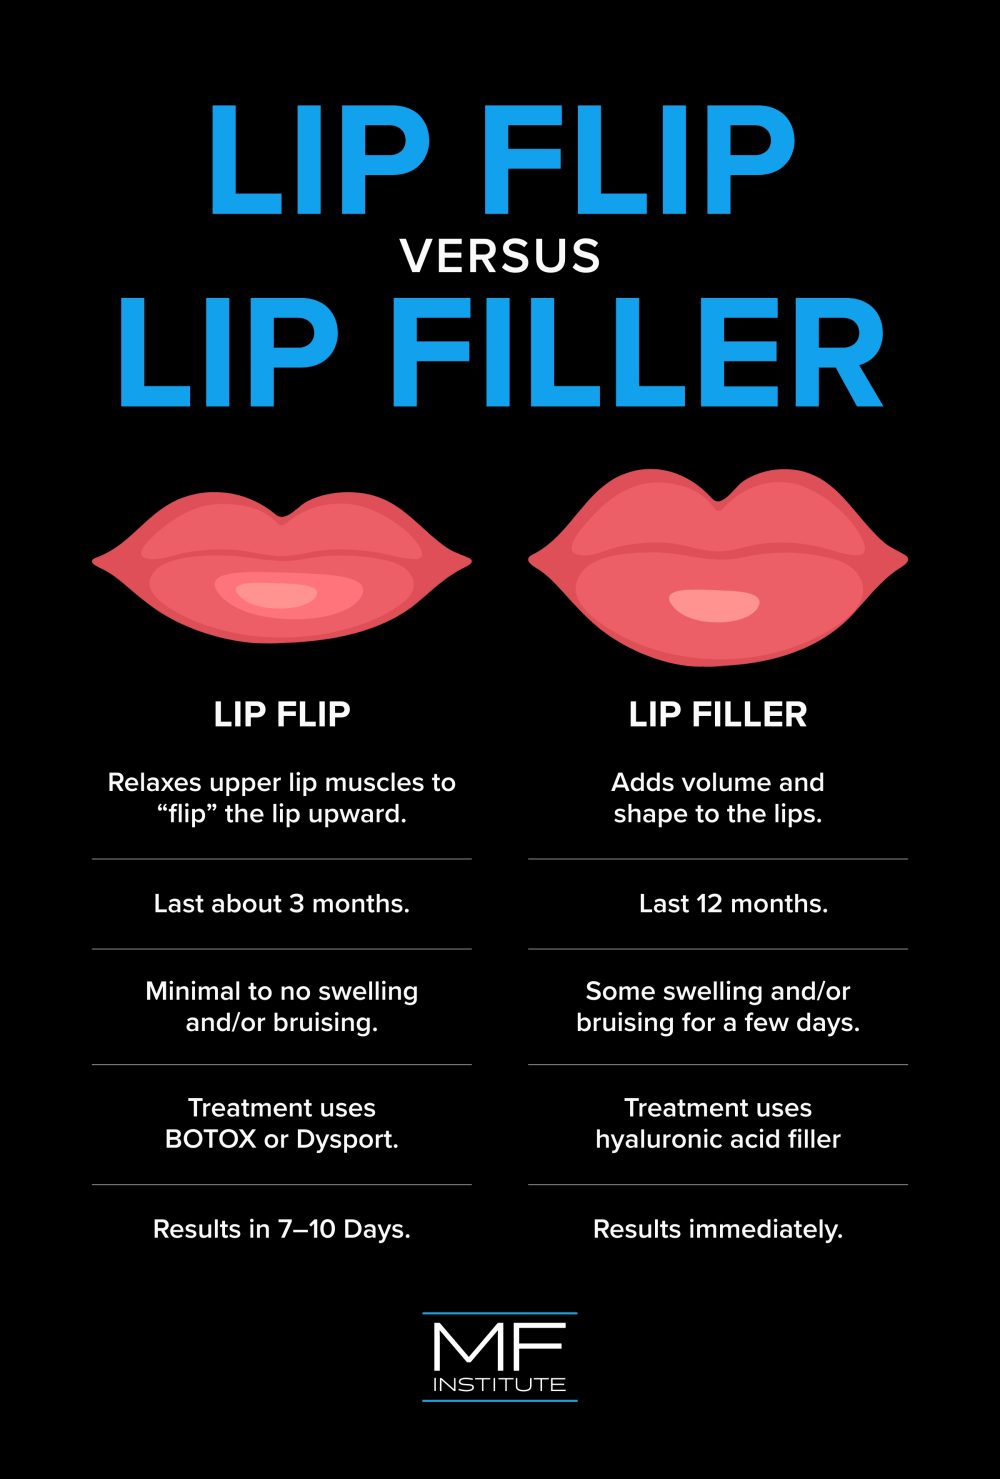 lip flip vs. lip filler comparison infographic